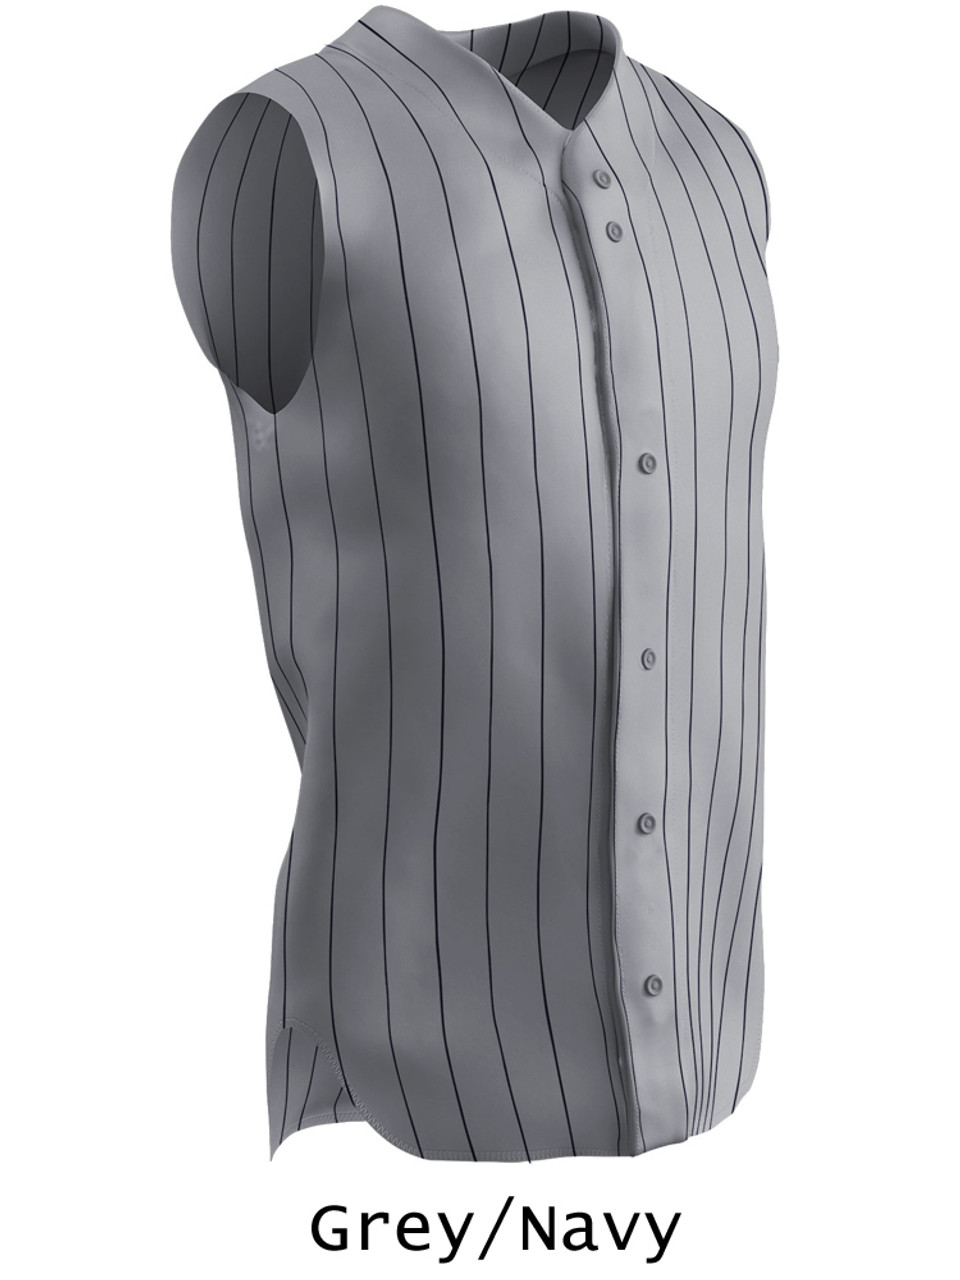 sleeveless baseball vest